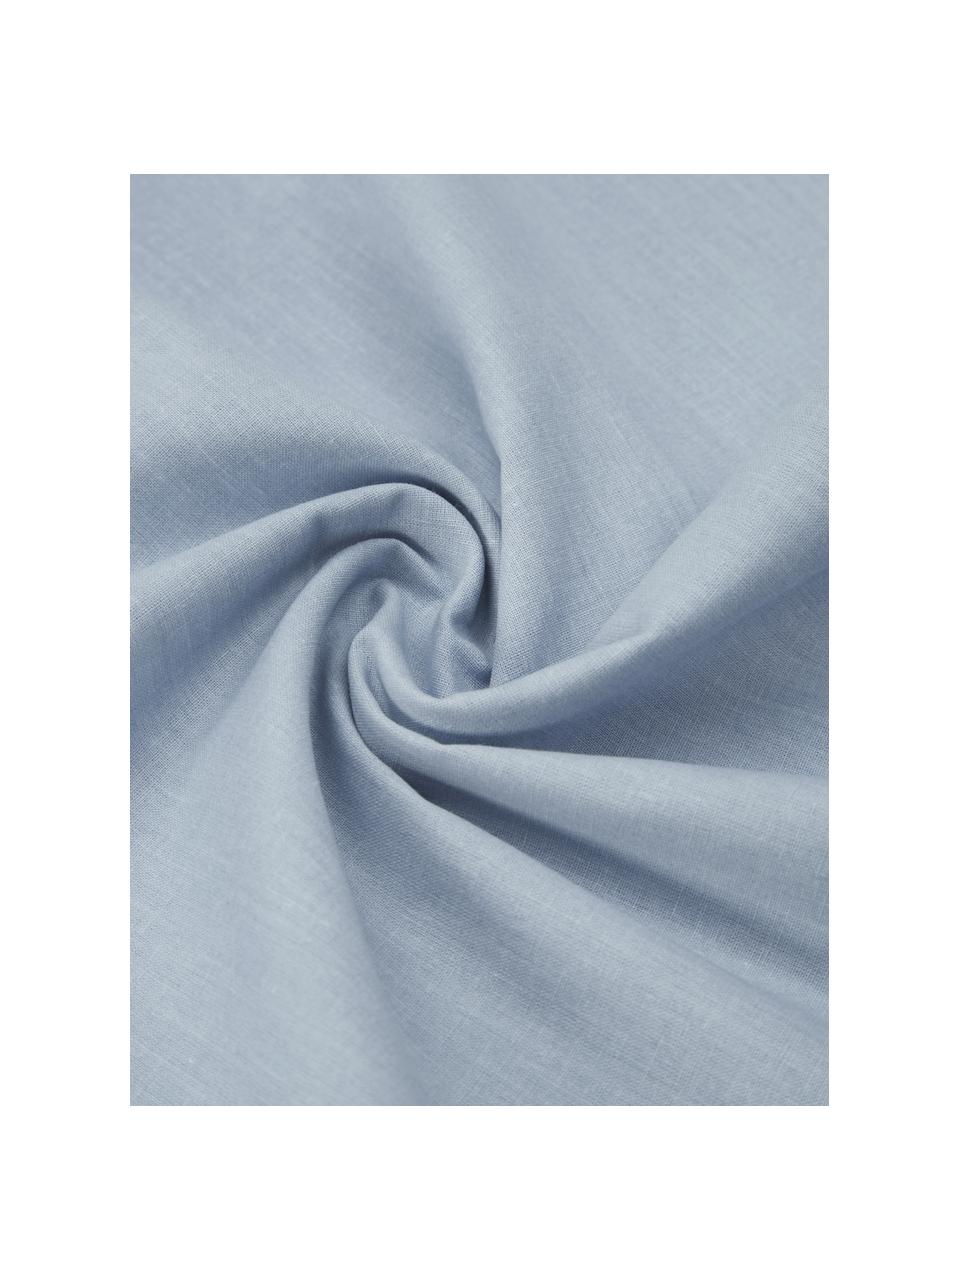 Komplet poszewek na poduszkę z bawełny z efektem sprania Arlene, 2 elem., Niebieski, S 40 x D 80 cm